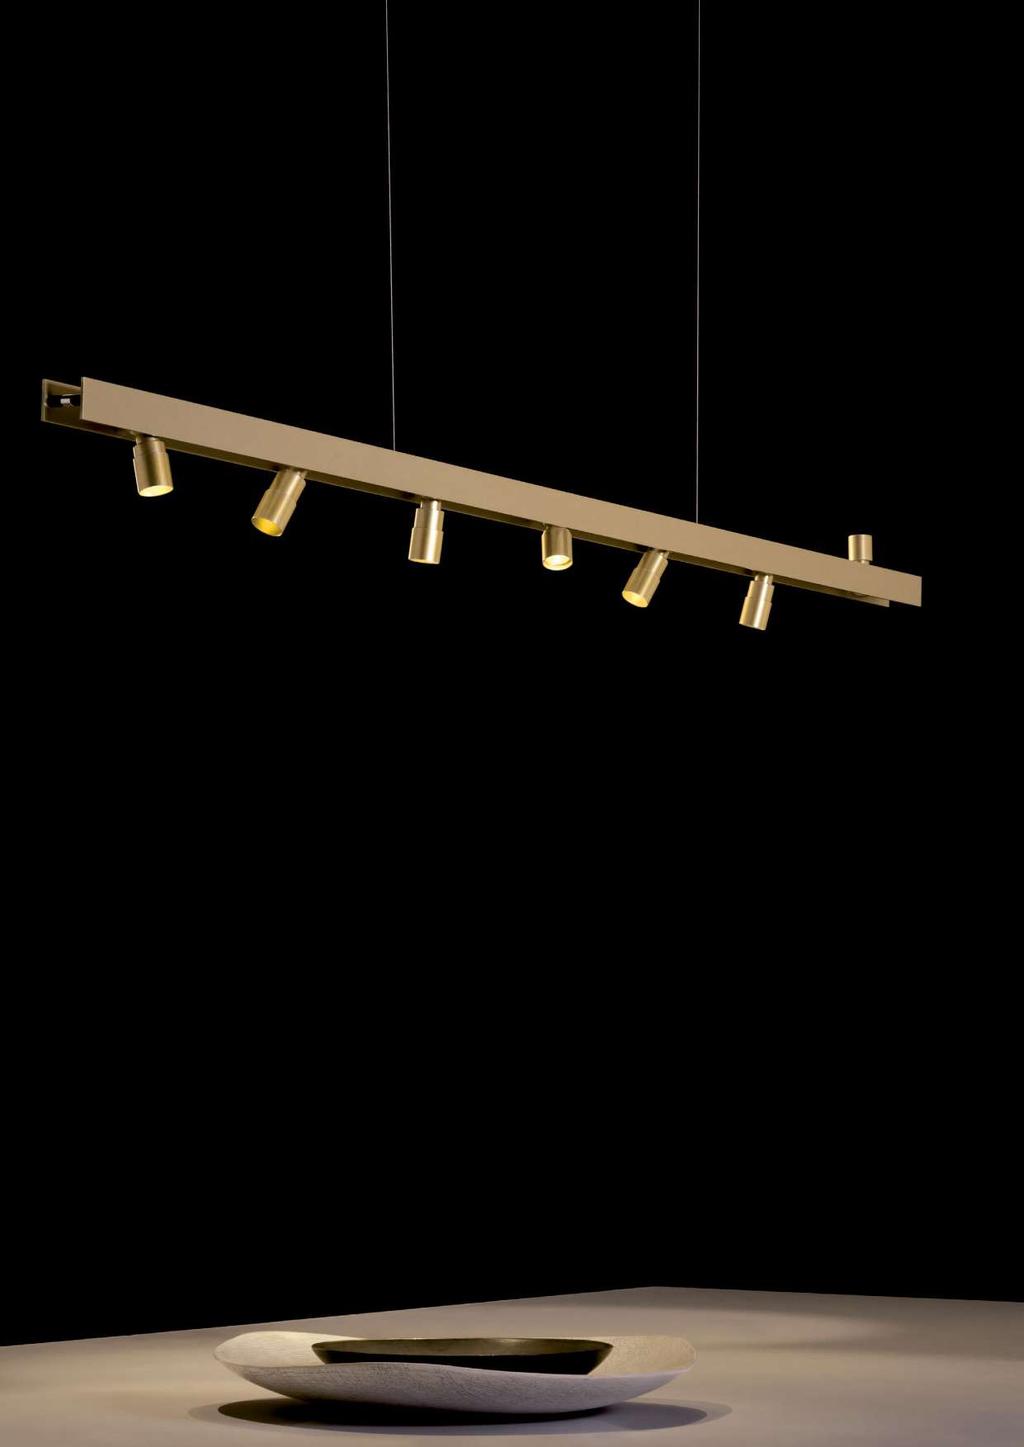 CONTATTO design Gianfranco Marabese 2015 engeneering Andrea Zandonà Collezione di spot con coni di luce variabili attraverso un movimento a cannocchiale, con aggancio alla struttura tramite magnete,